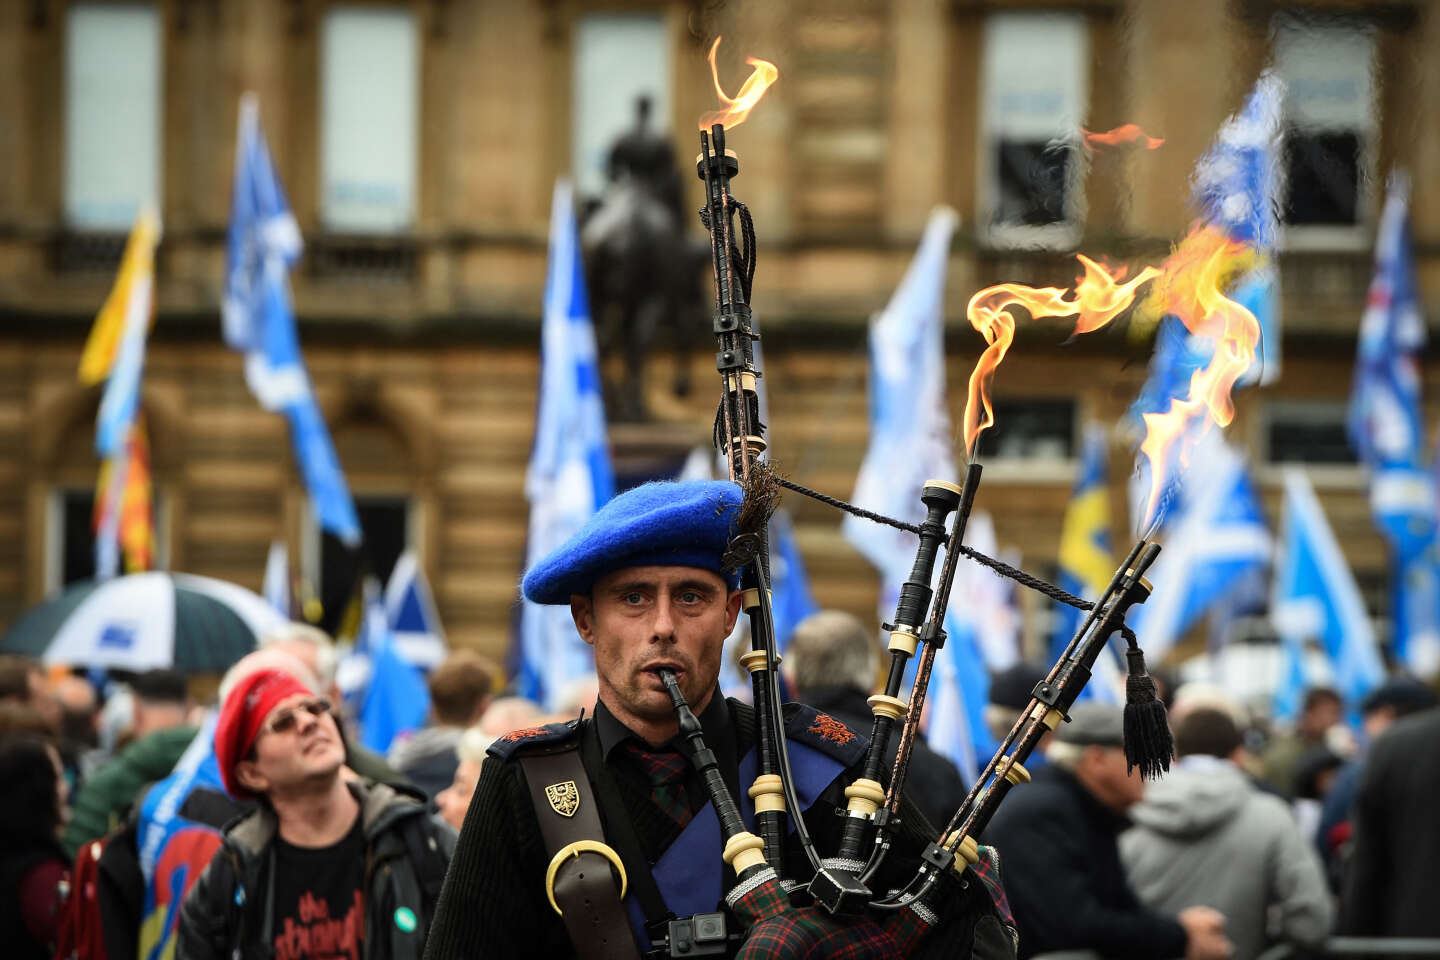 Szkocja nie może przeprowadzić kolejnego referendum w sprawie niepodległości bez zgody Wielkiej Brytanii, zgodnie z przepisami brytyjskiego Sądu Najwyższego